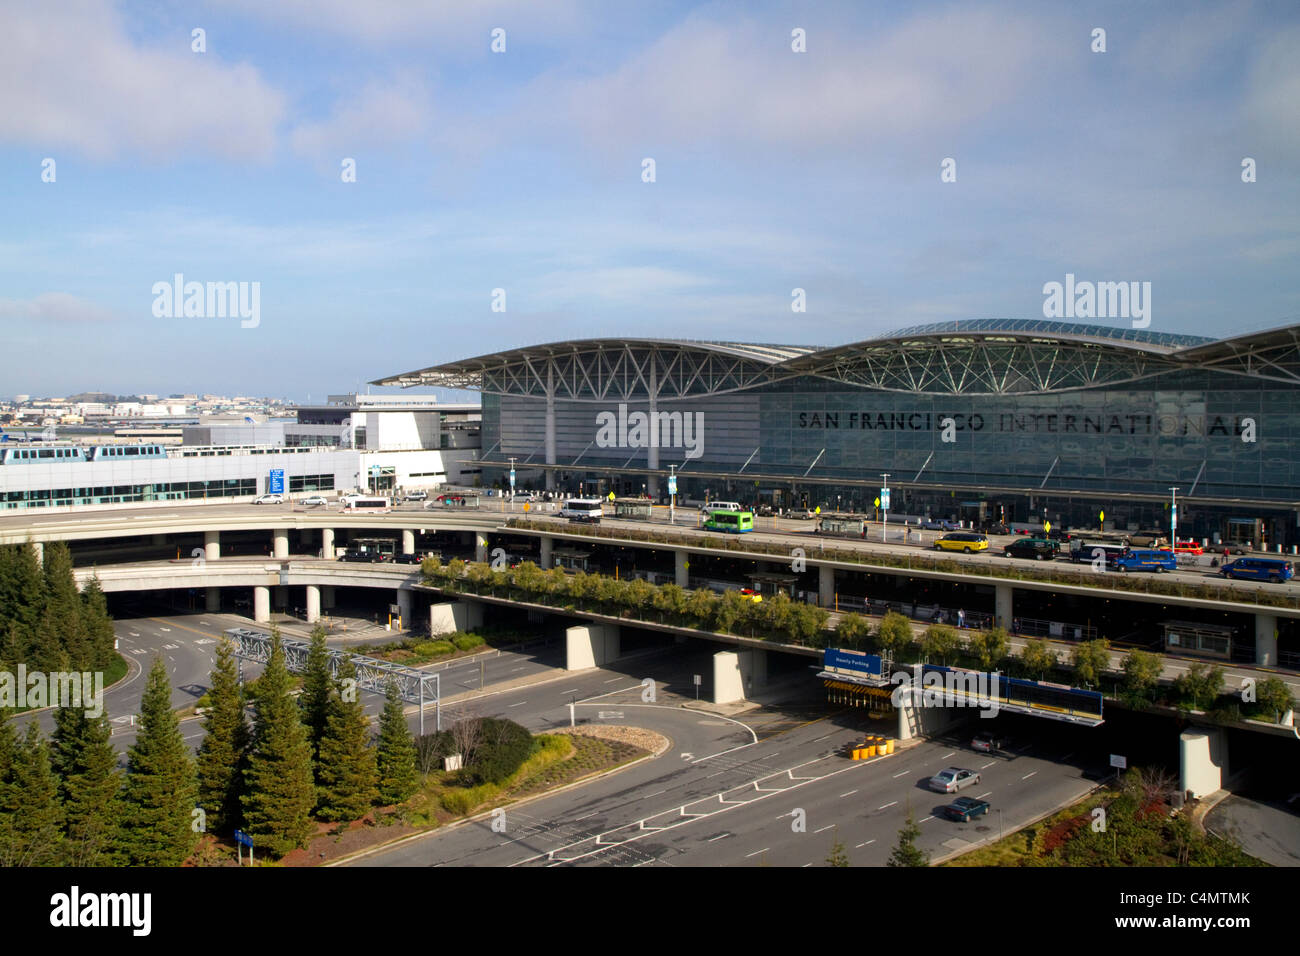 Terminal del Aeropuerto Internacional de San Francisco, situado al sur del centro de San Francisco, California, EEUU. Foto de stock